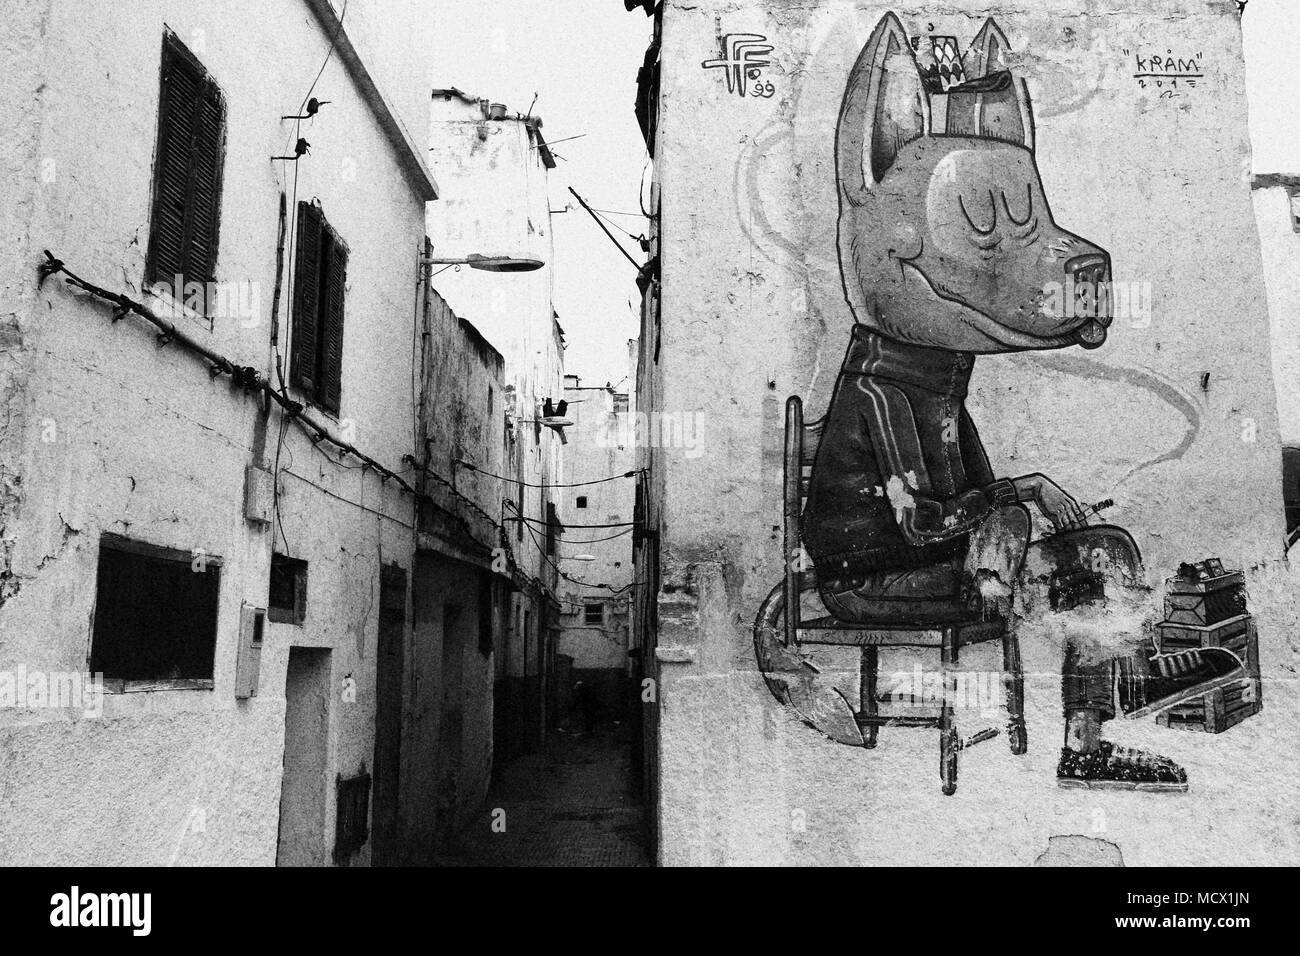 Vieille photo noir et blanc d'un grand graffito sur une façade de maison à Casablanca, Maroc Banque D'Images